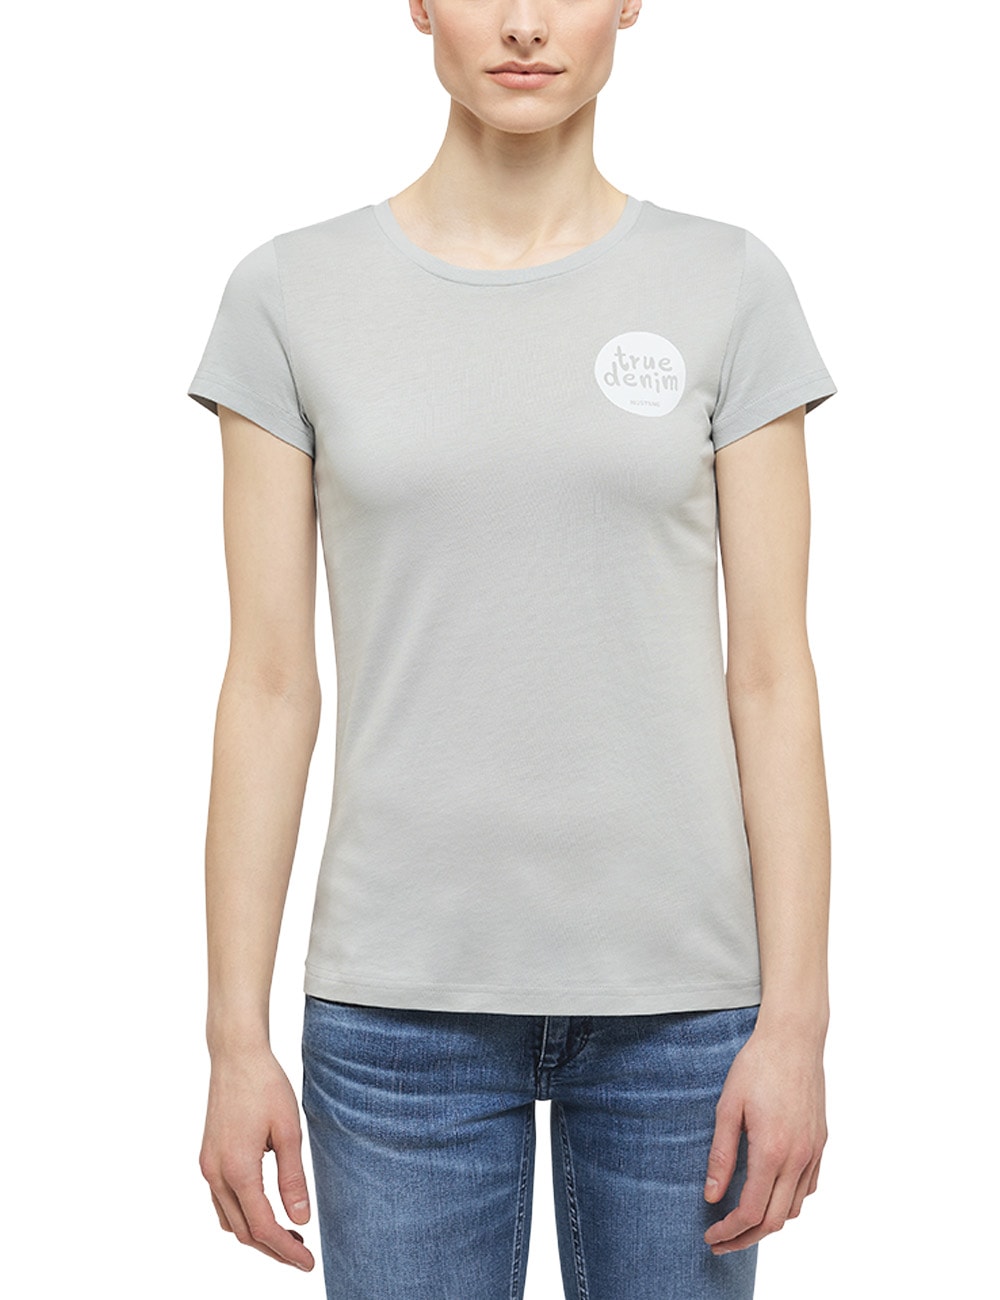 MUSTANG T-Shirt »Alexia C Print« bestellen bei OTTO